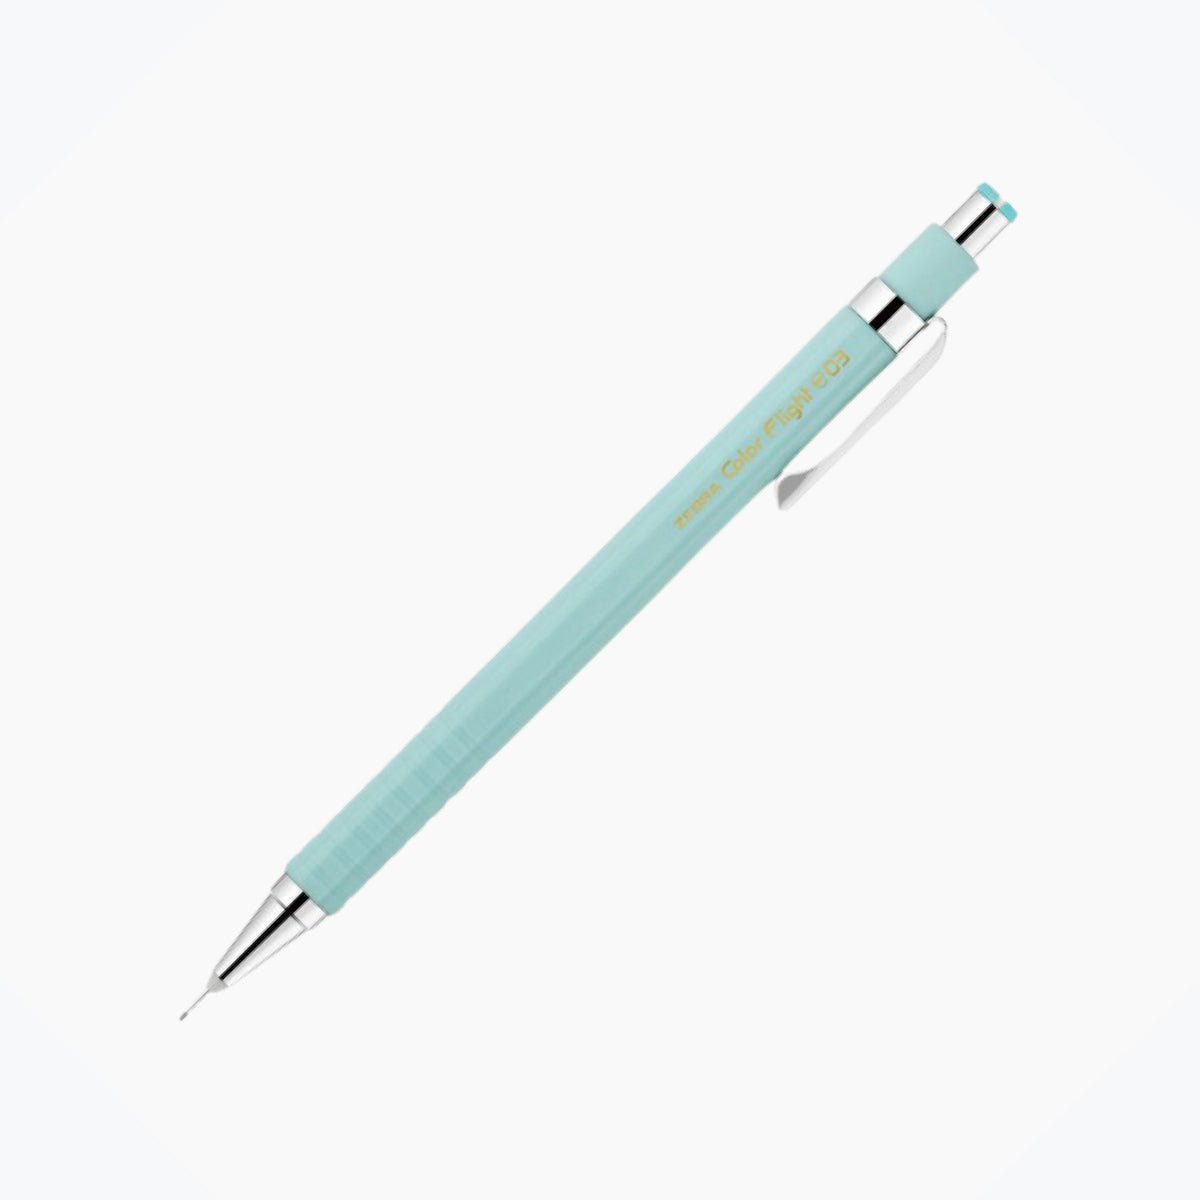 Zebra - Mechanical Pencil - Color Flight Pastel - 0.3mm - Mint <Outgoing>